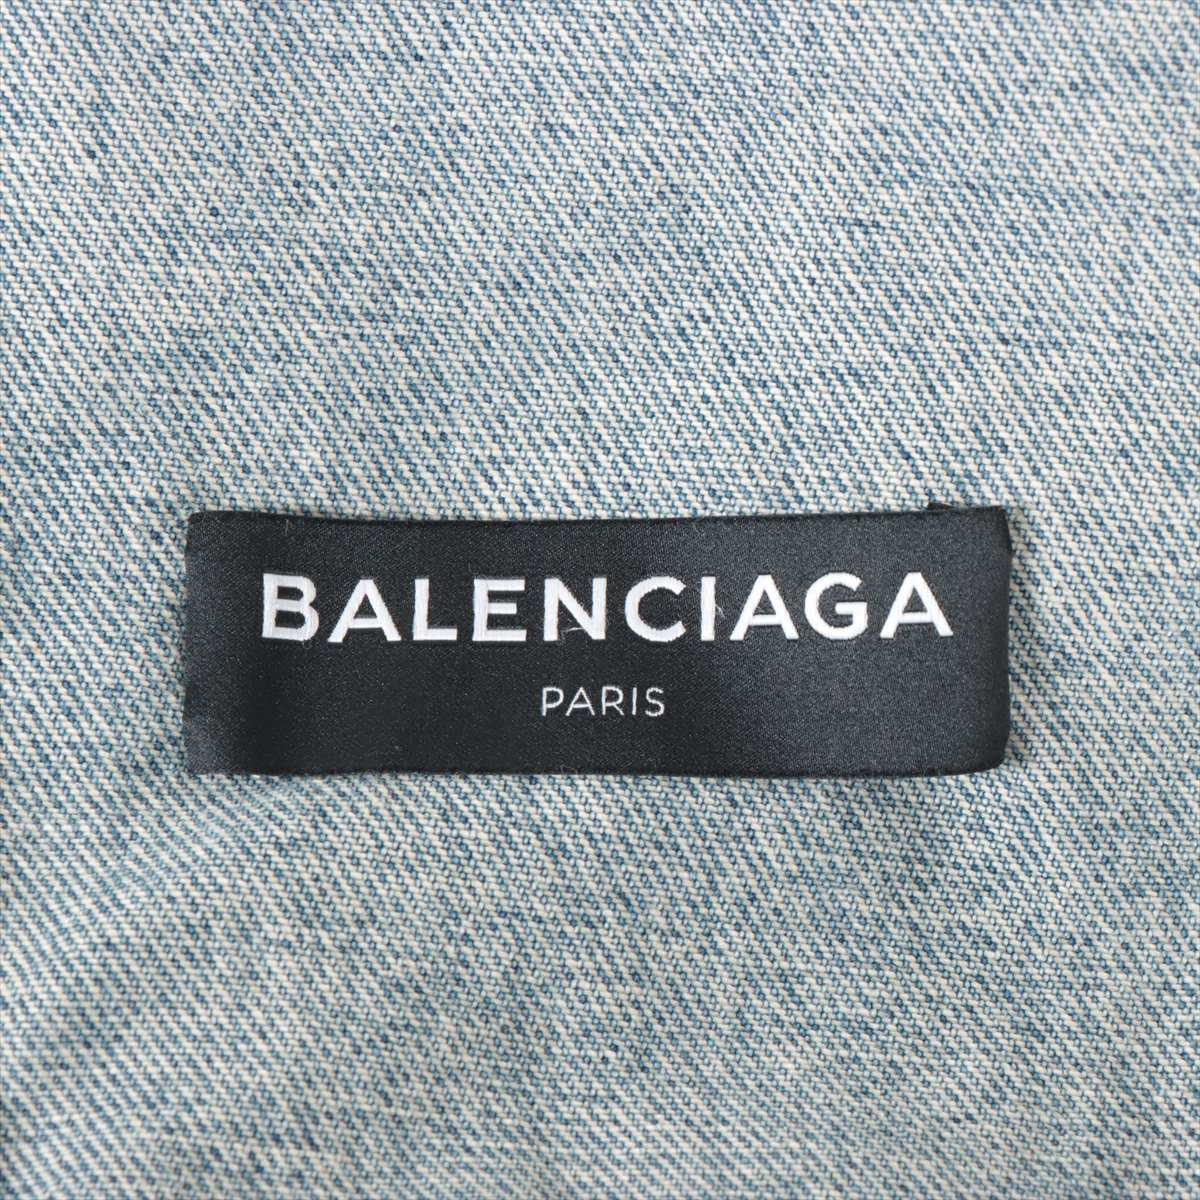 バレンシアガ 17AW コットン×ナイロン デニムジャケット 44 メンズ ブルー  487342 キャンペーンロゴ 刺繍 ダメージ加工